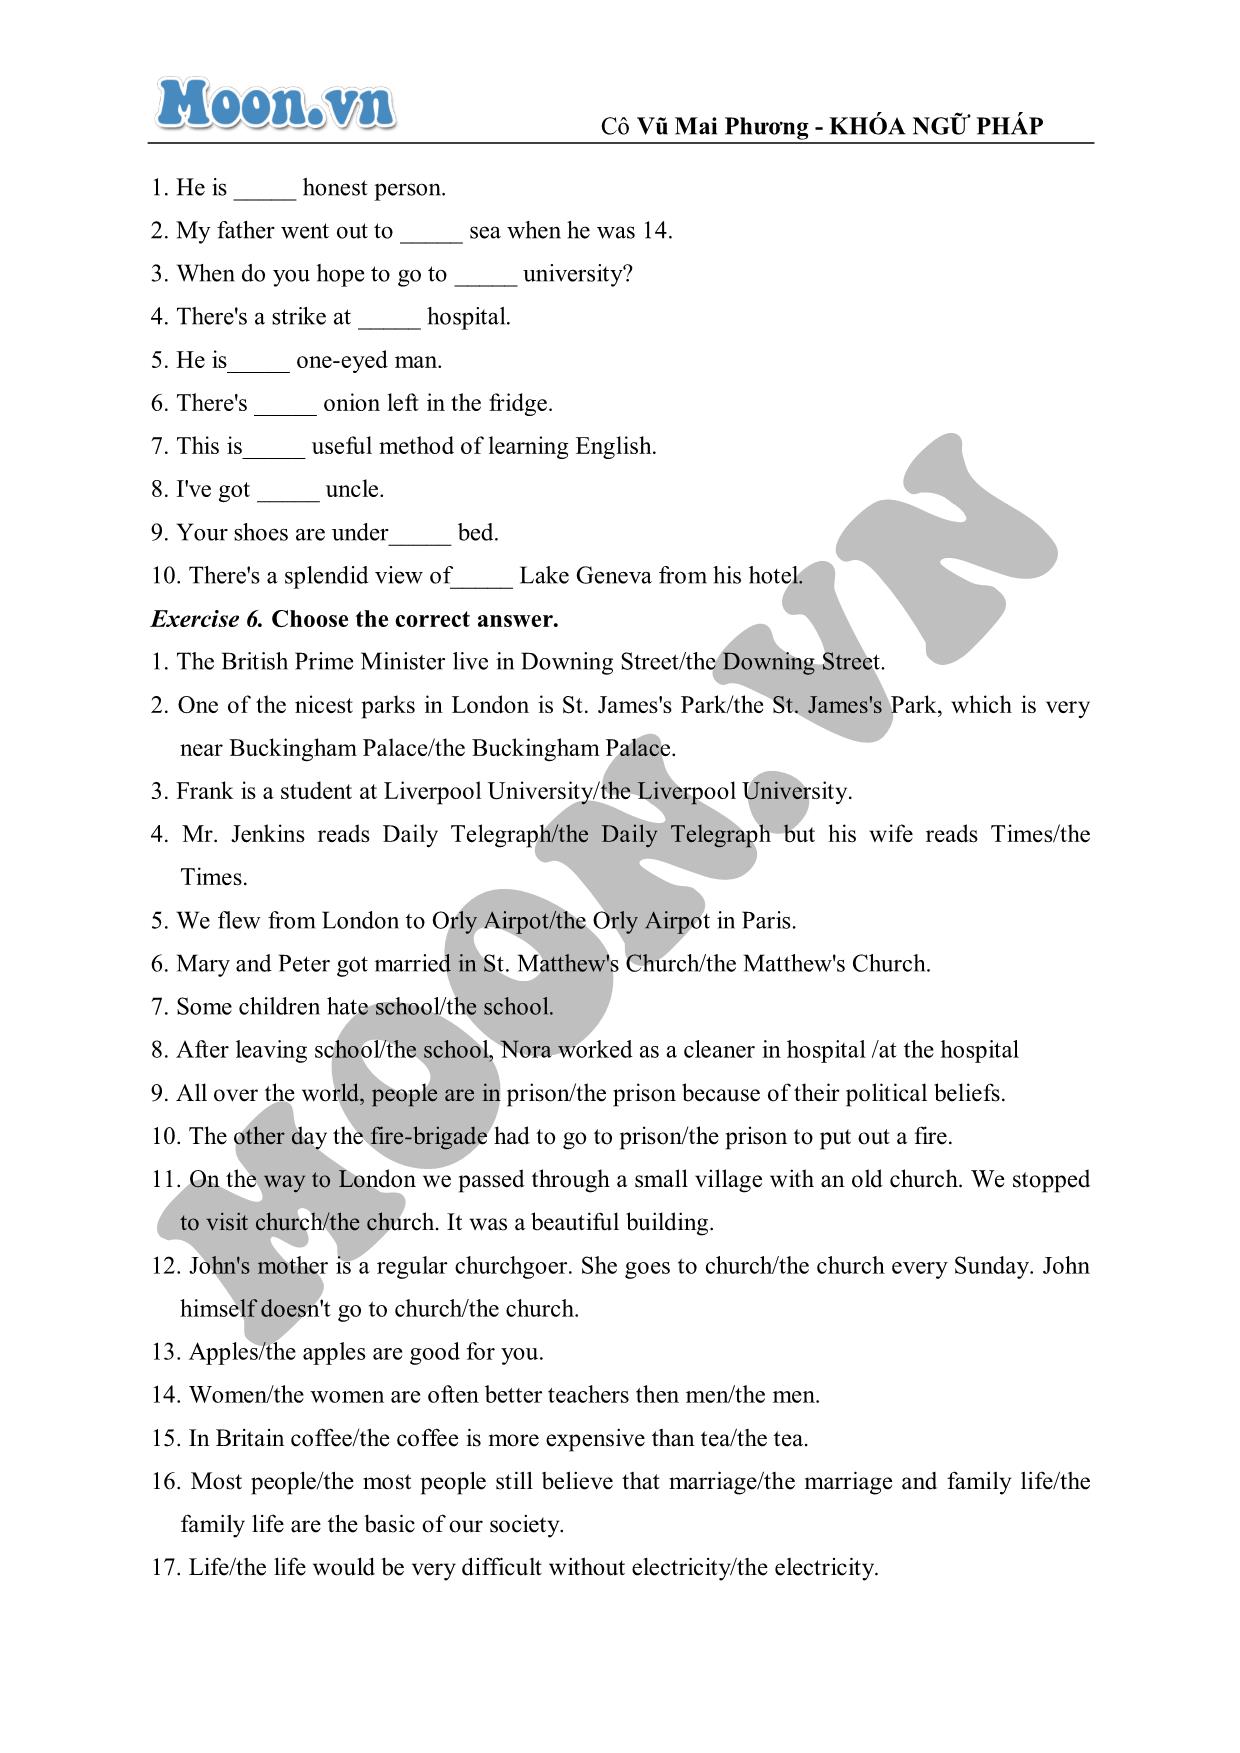 Bài luyện tập nâng cao về mạo từ (exercises) trang 3